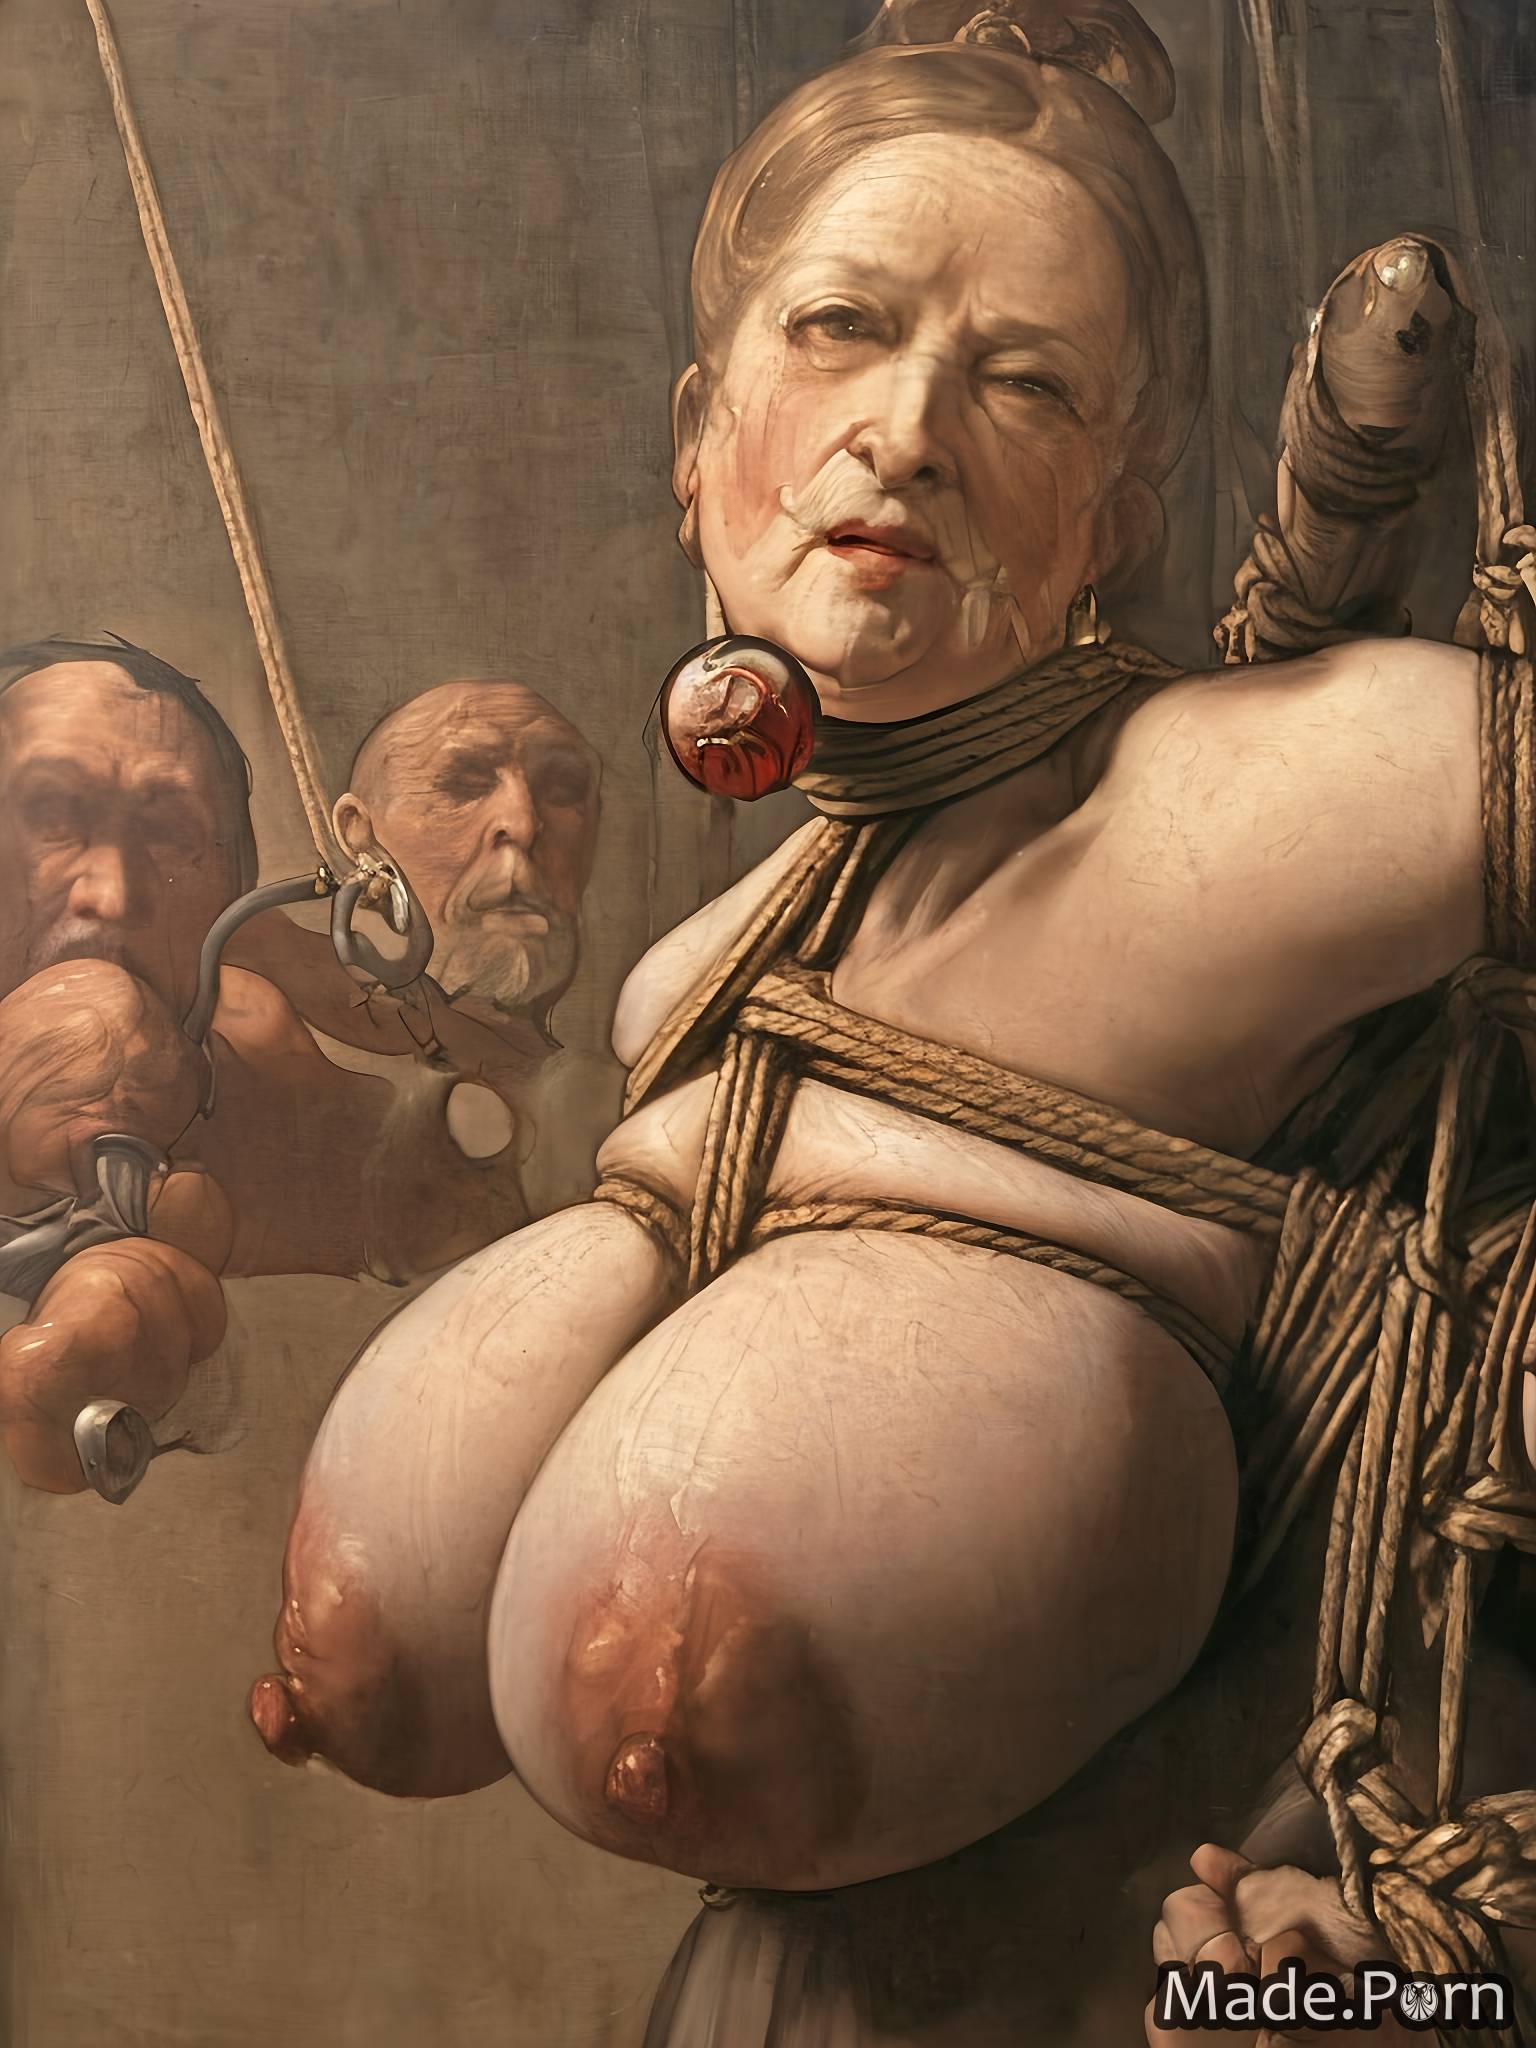 tall big tits veiny dick baroque saggy tits gigantic boobs woman